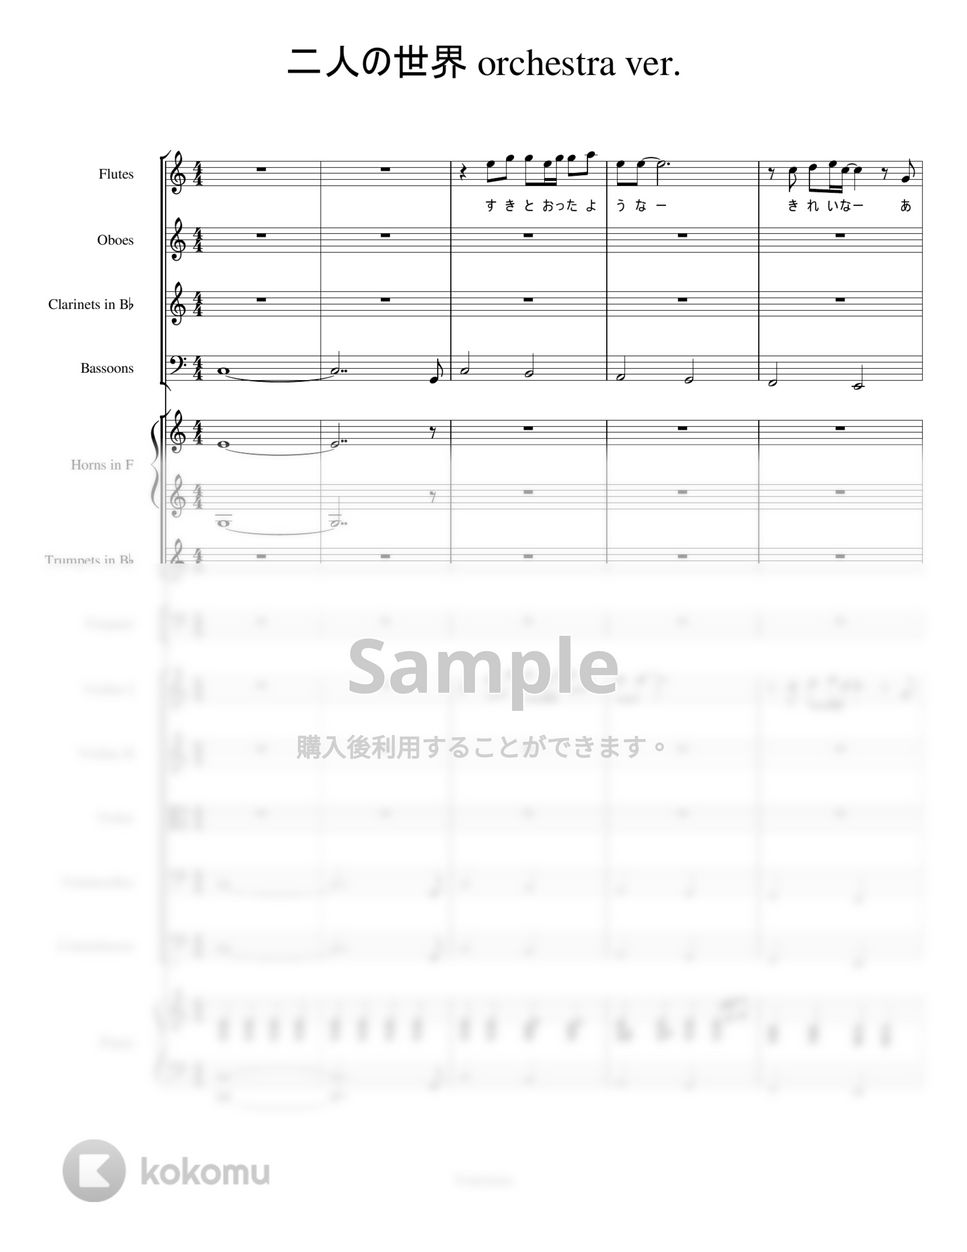 夢から醒めた夢 - 二人の世界 (オーケストラアレンジ) by Trohishima